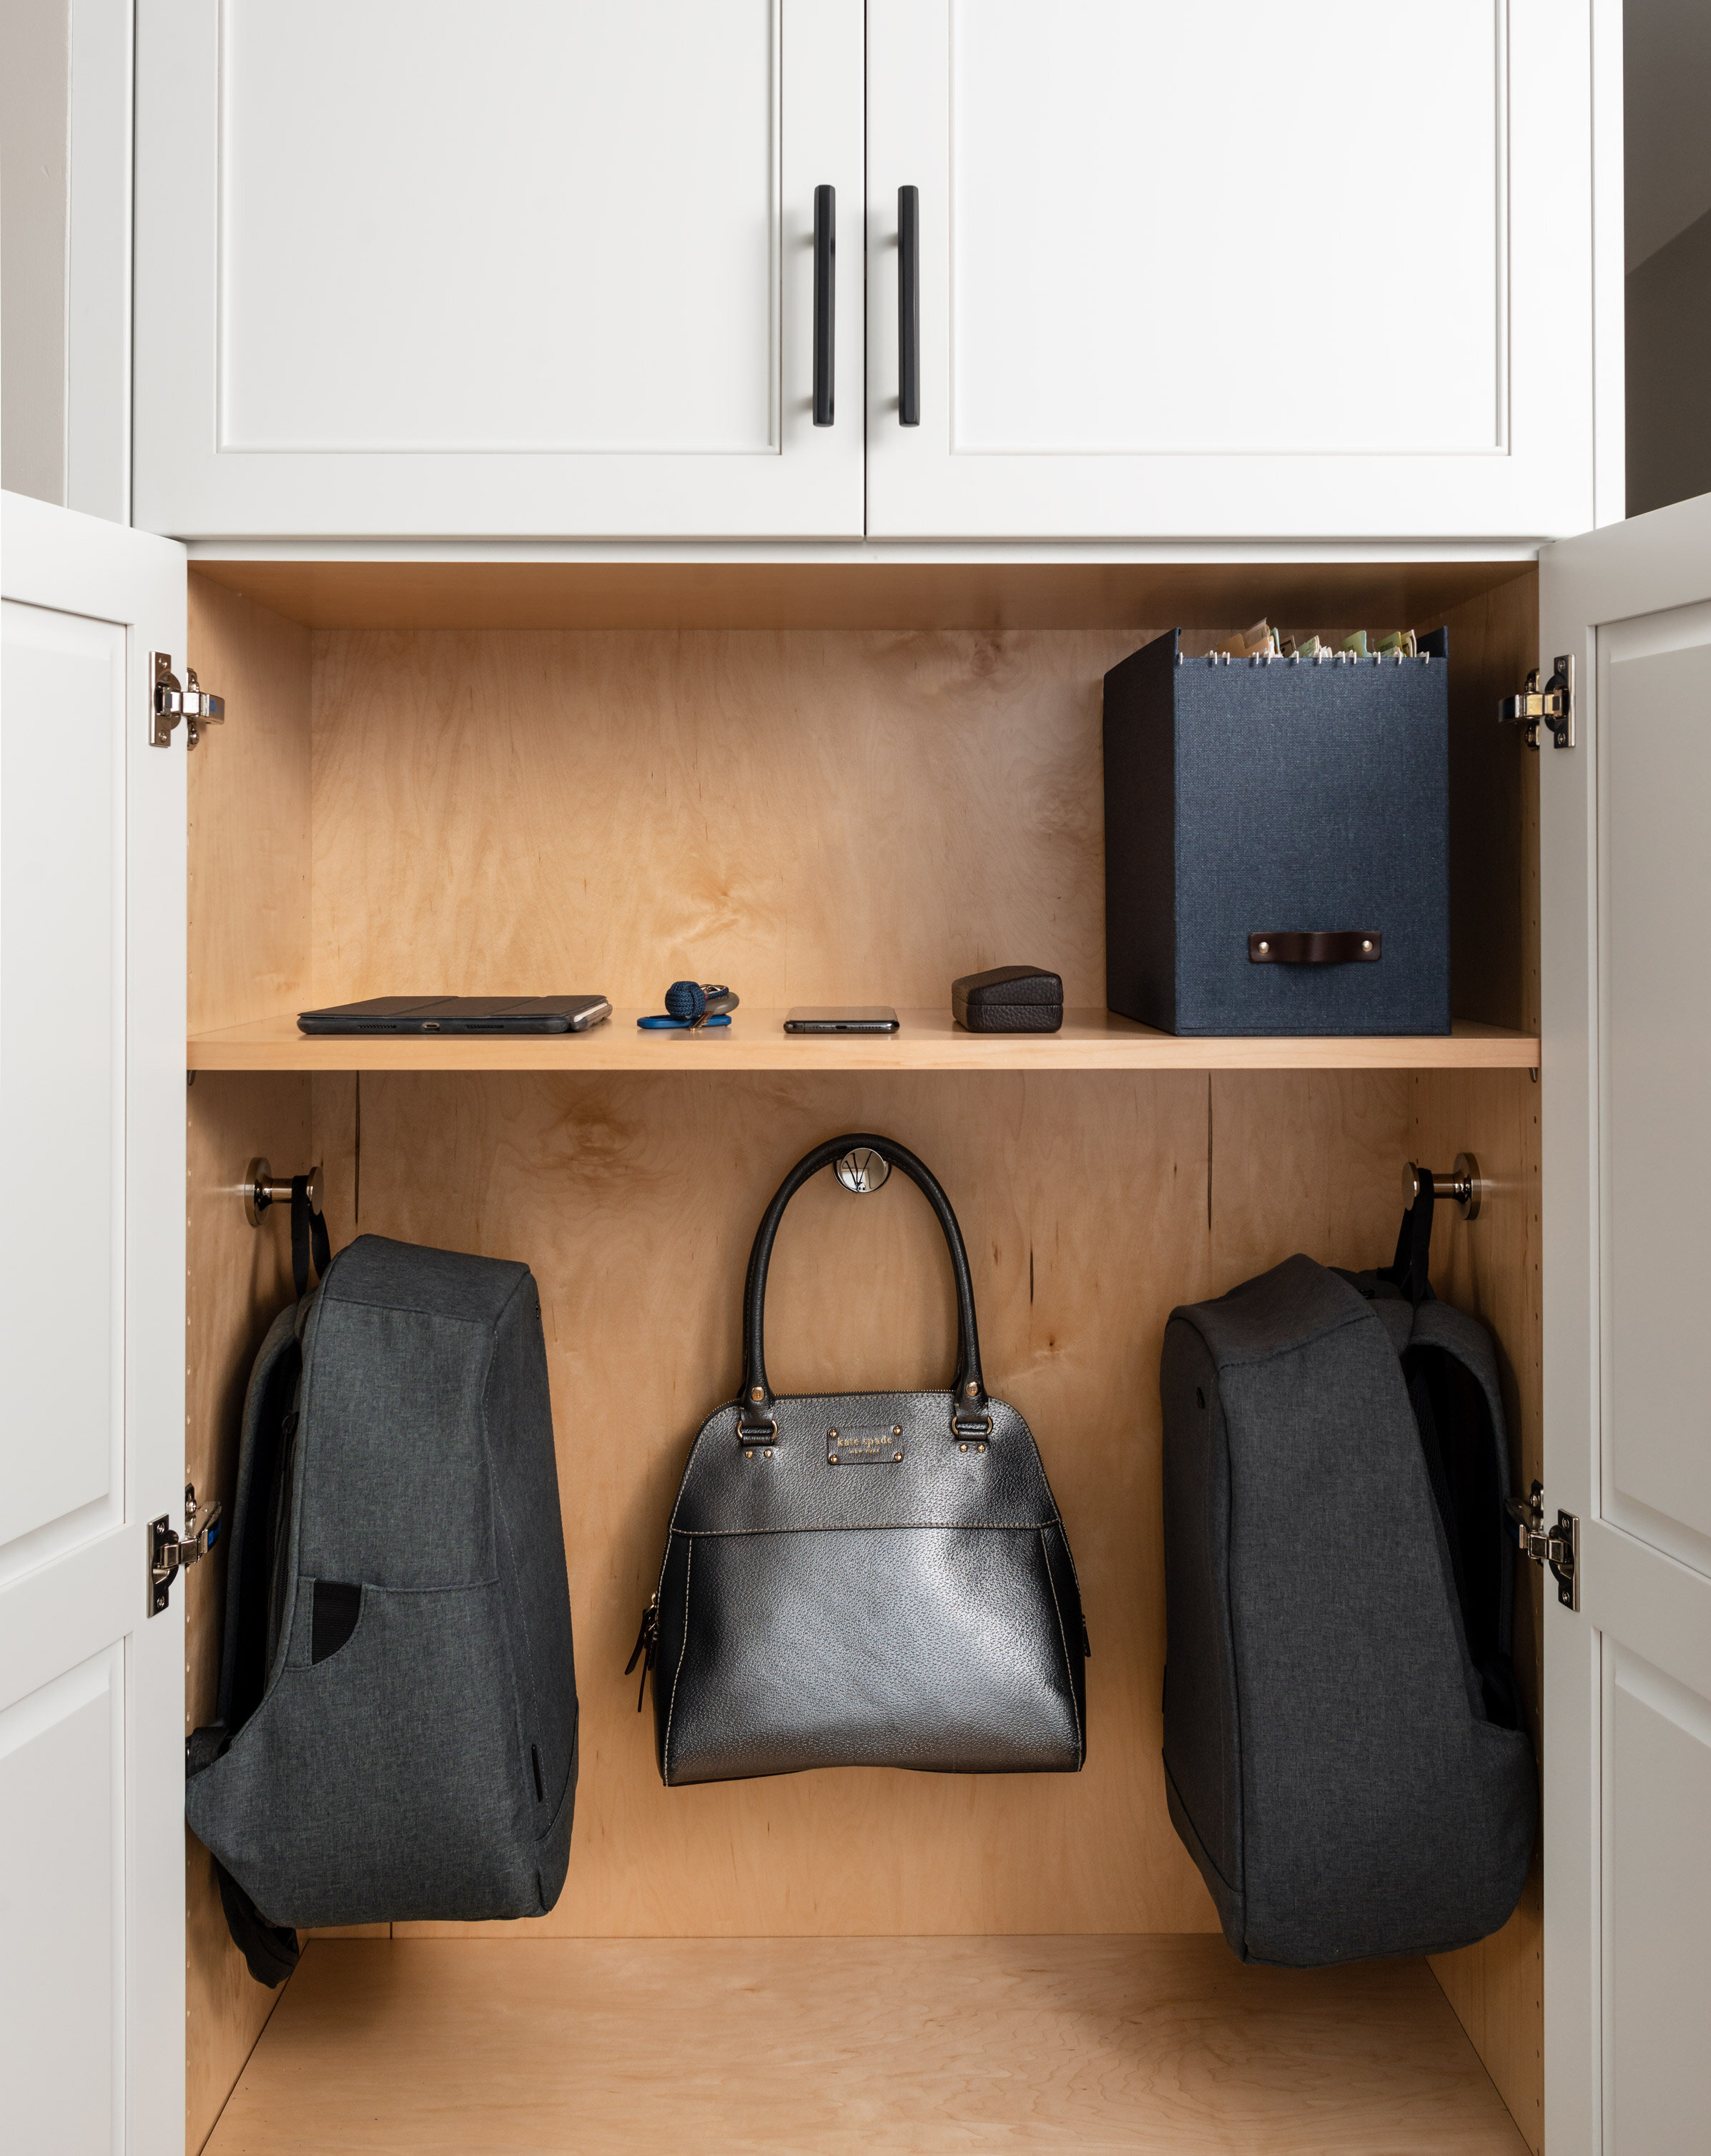 design 2 order julie h sheridan interior design family focused minimalist design kitchen storage command center.jpg